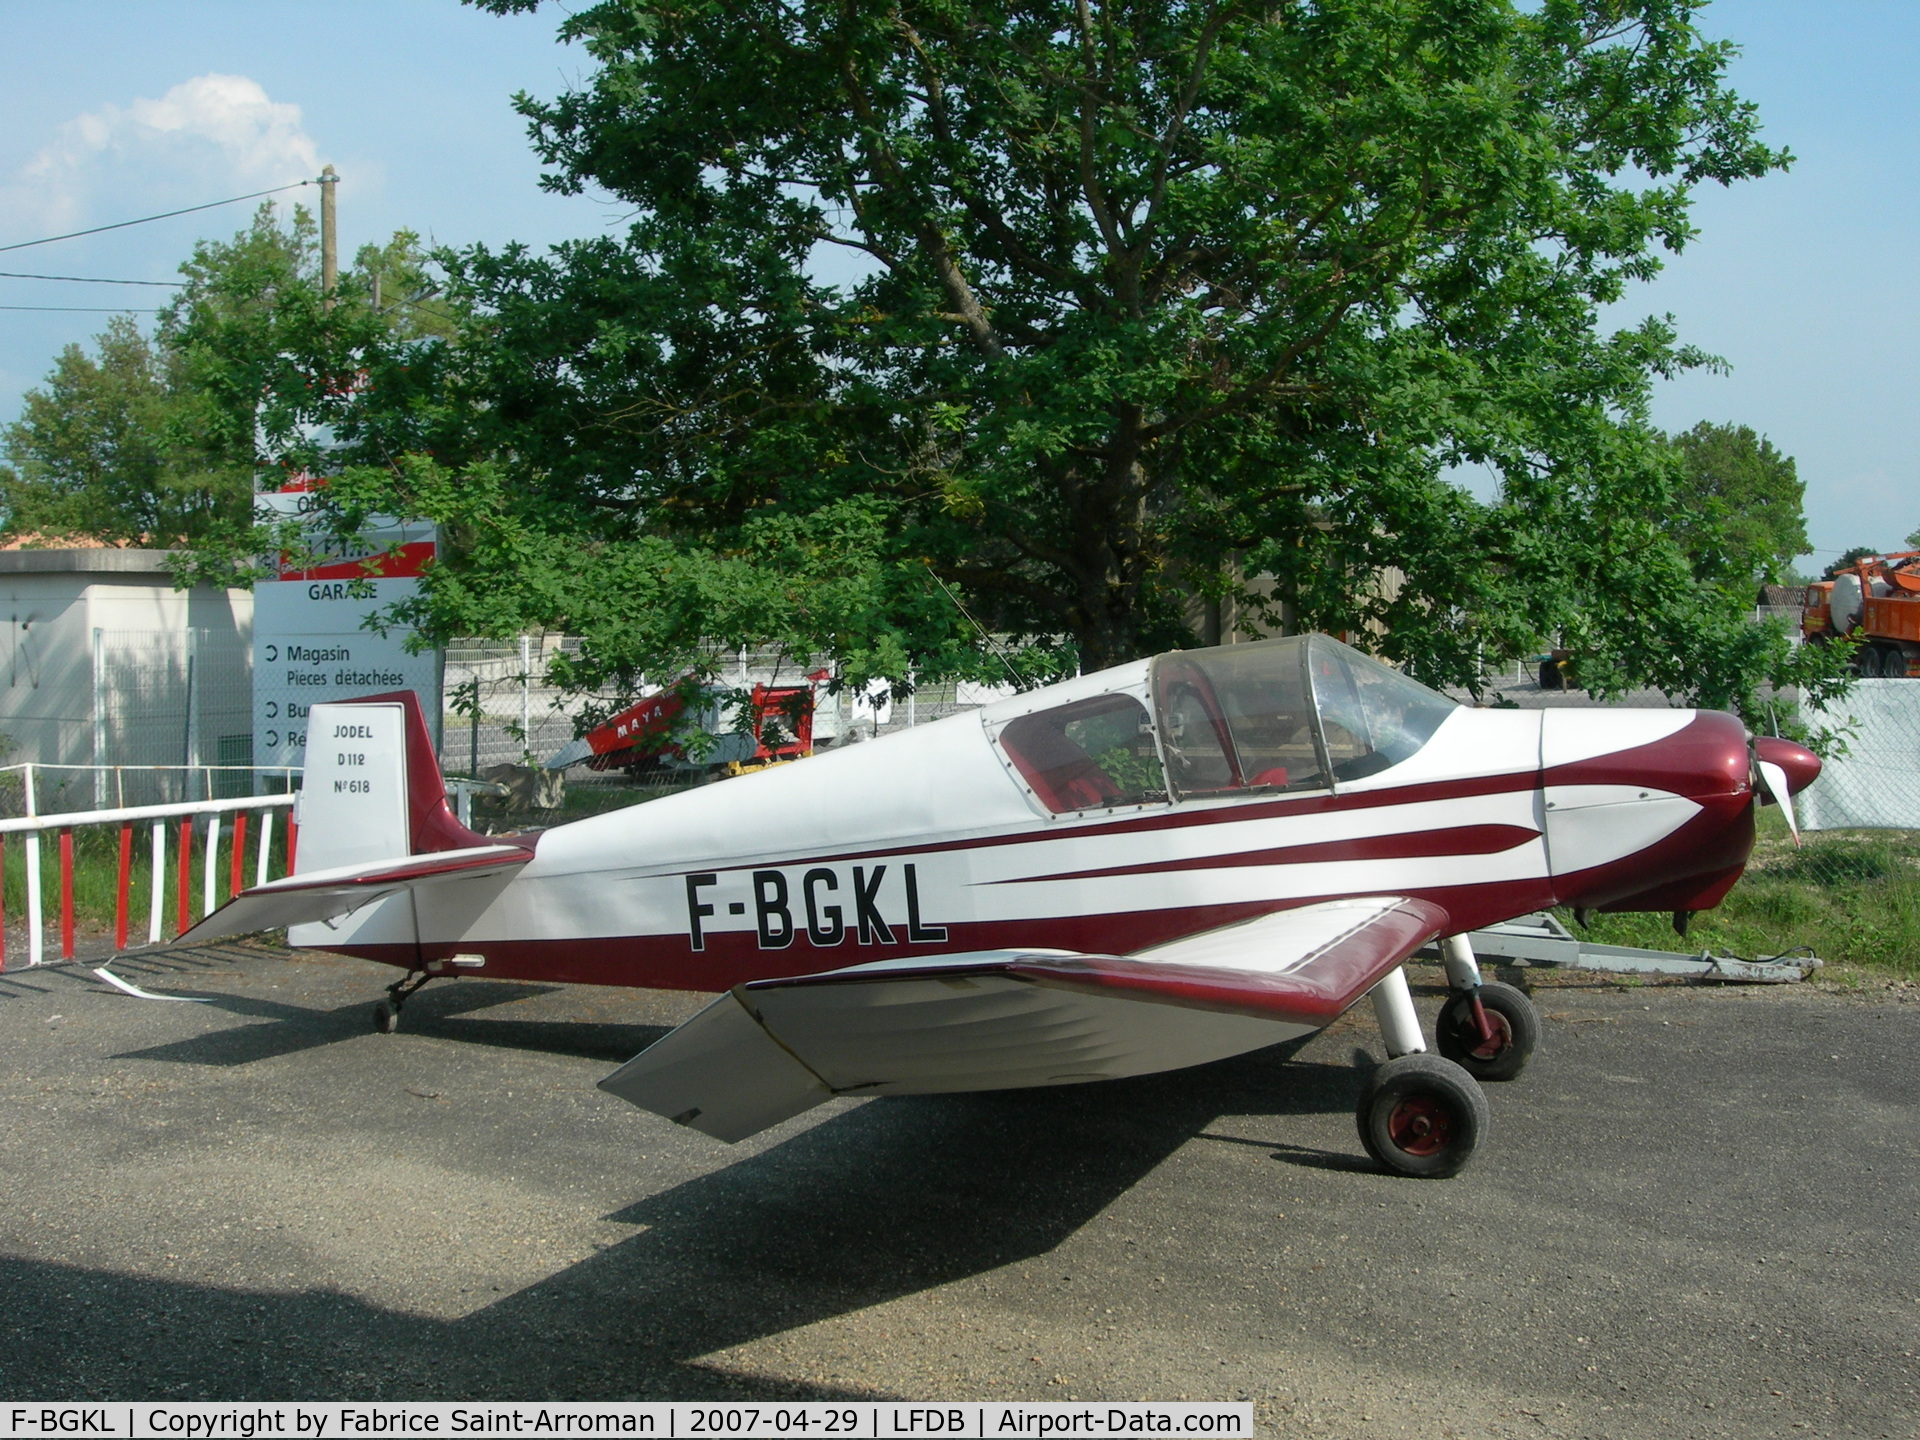 F-BGKL, Wassmer (Jodel) D-112 Club C/N 618, outside its hangar in Montauban.